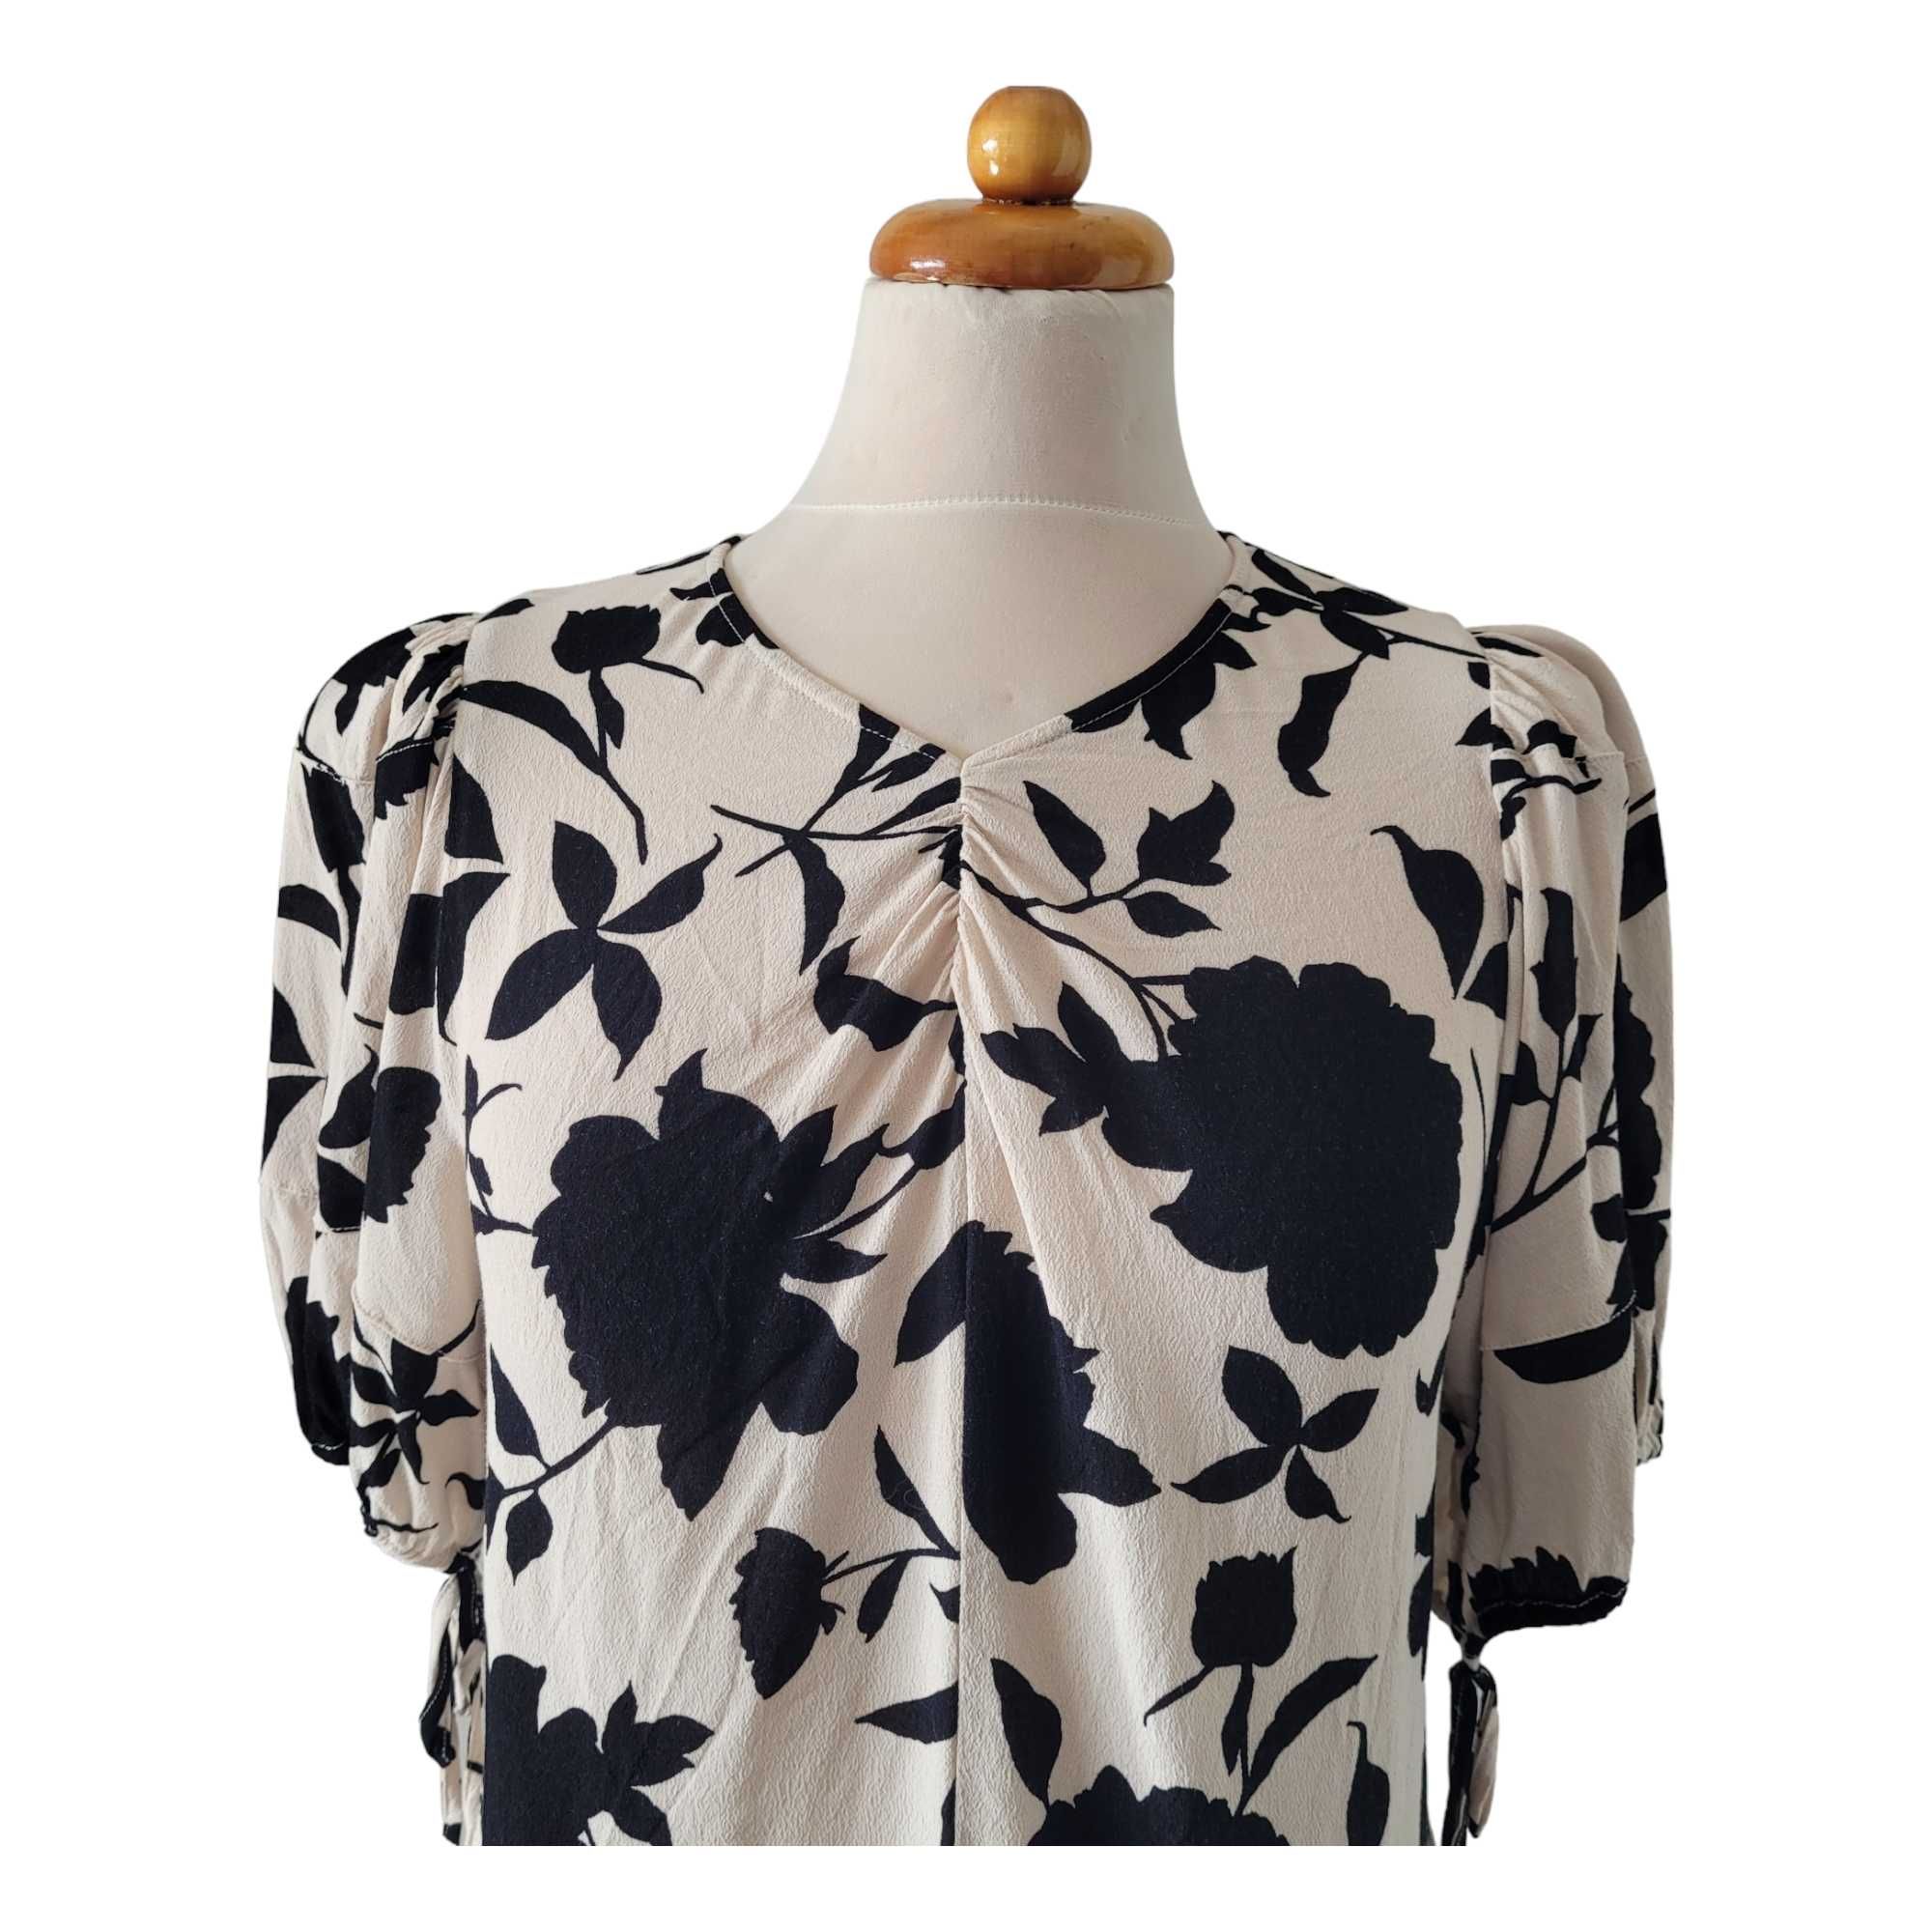 Beżowa czarna bluzka damska kwiaty M H&M marszczenia ażurowa wstawka